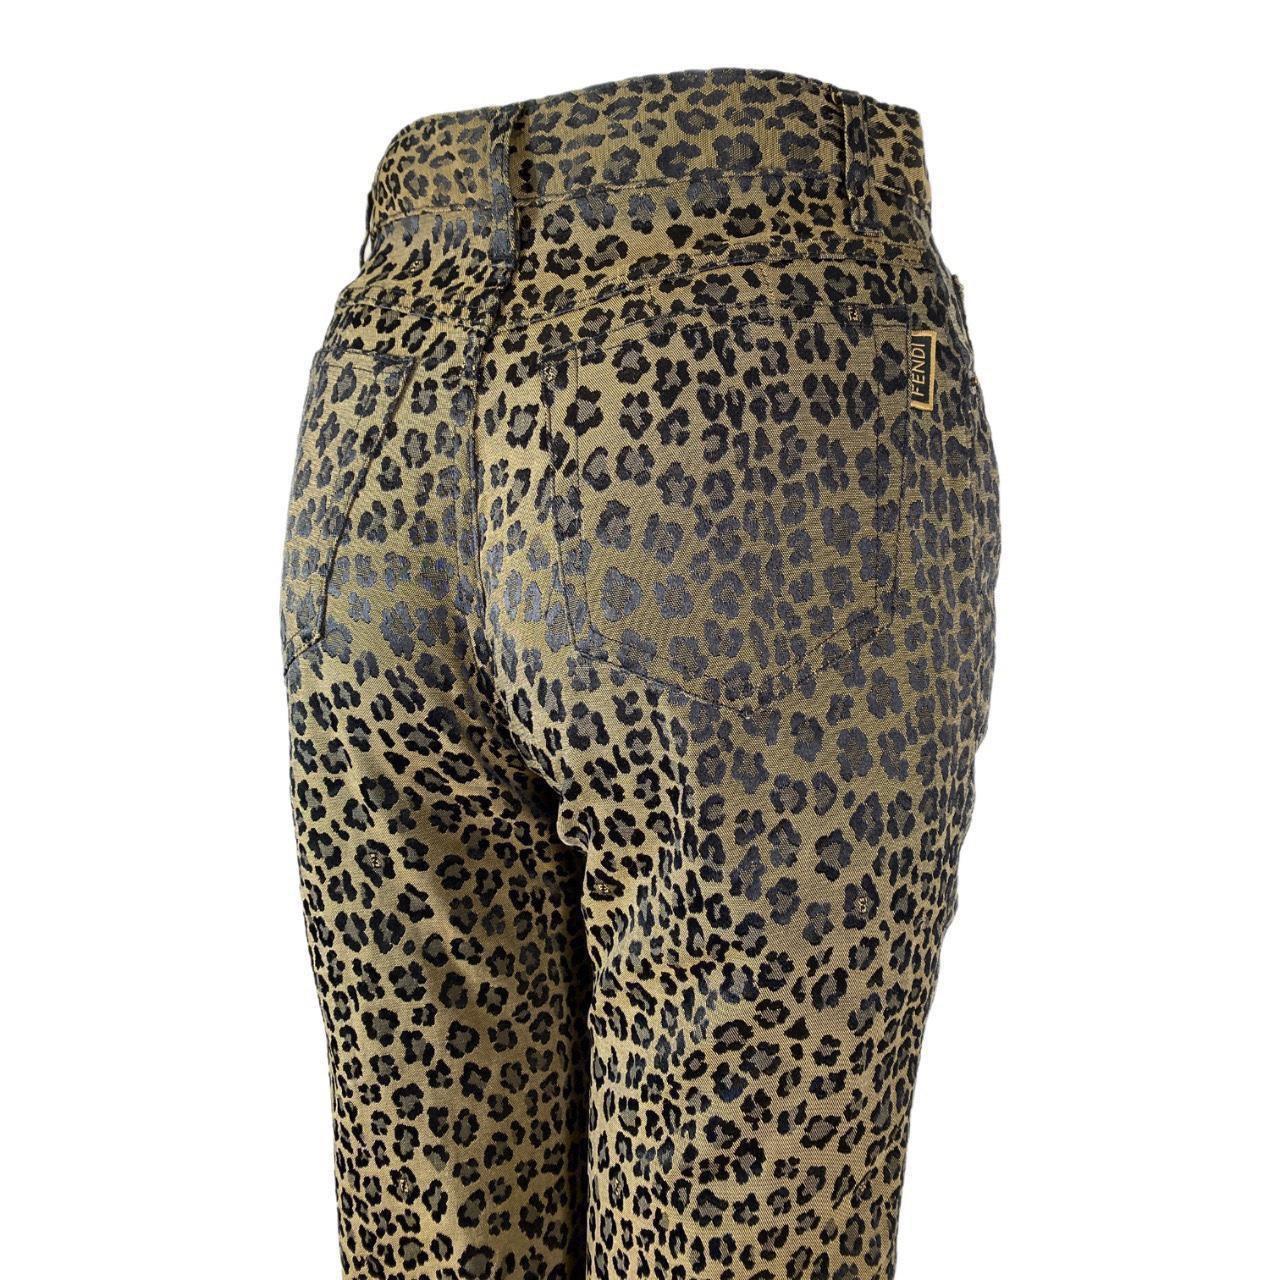 Pantalon Fendi 

Jeans à taille haute en léopard

Zucca classique imprimé léopard

CONDITION : Cet article est une pièce vintage/pré-portée, il faut donc s'attendre à quelques signes d'usure naturelle et d'âge. Cependant, il est en bon état